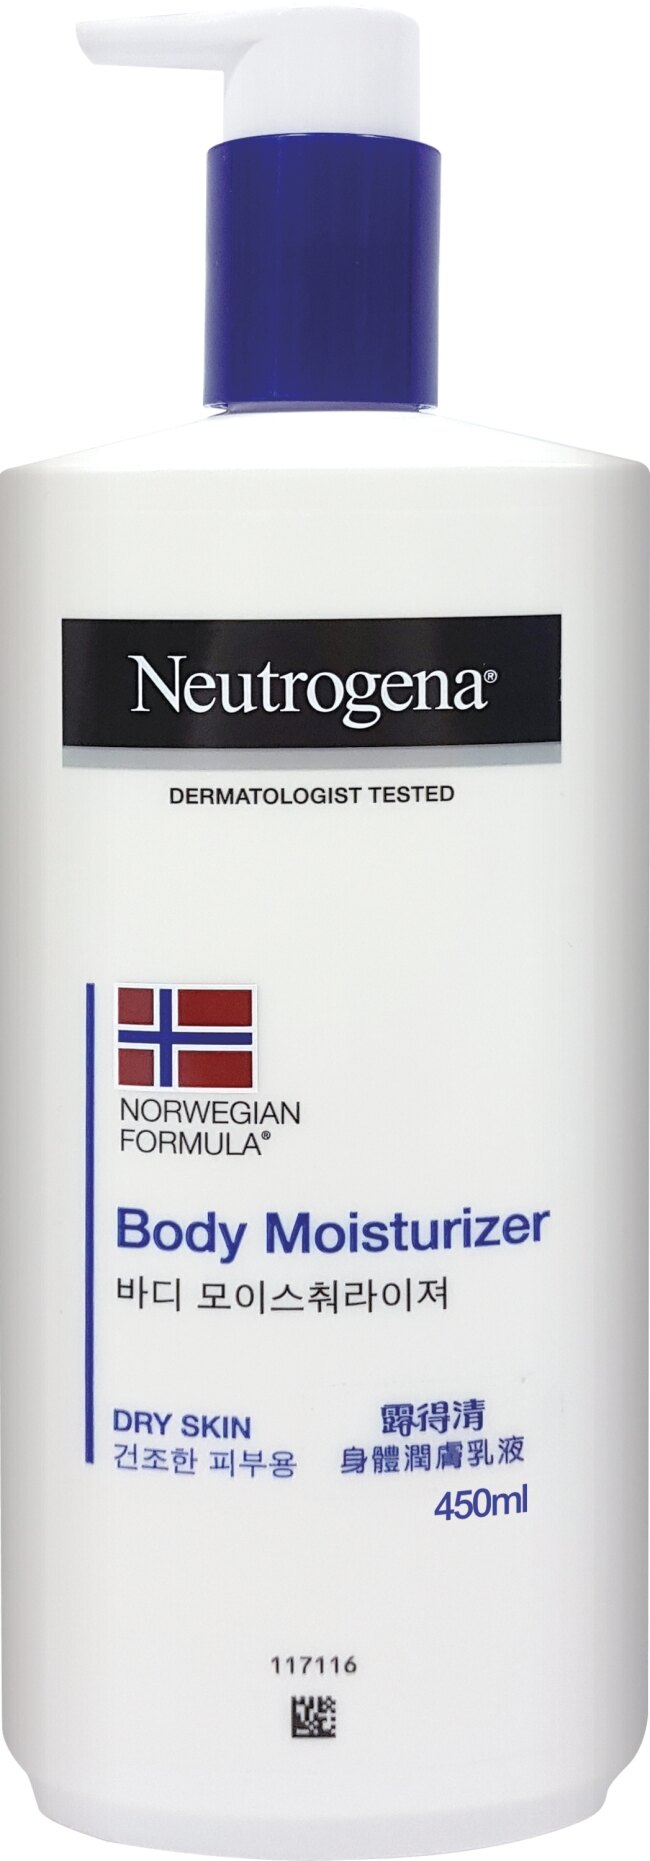 露得清 Neutrogena挪威身體潤膚乳液 450ml